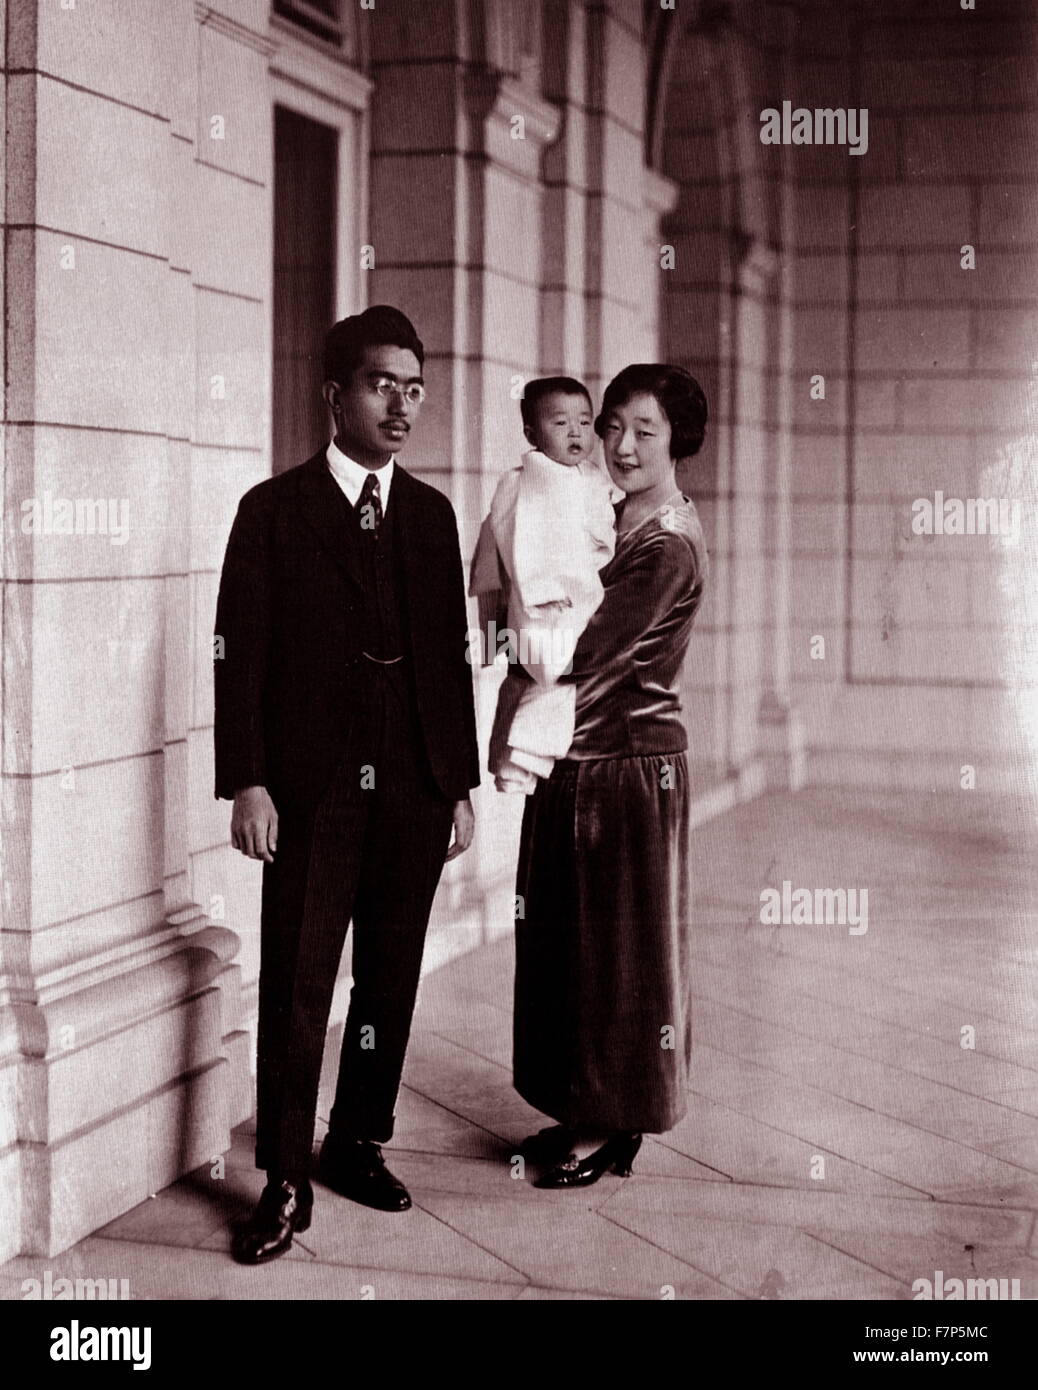 Photographie de l'empereur sh ?wa (1901-1989) Empereur du Japon, également connu sous le nom de Hirohito, l'Impératrice K ?jun et leur fille Shigeko Higashikuni (1925-1961). Datée 1928 Banque D'Images